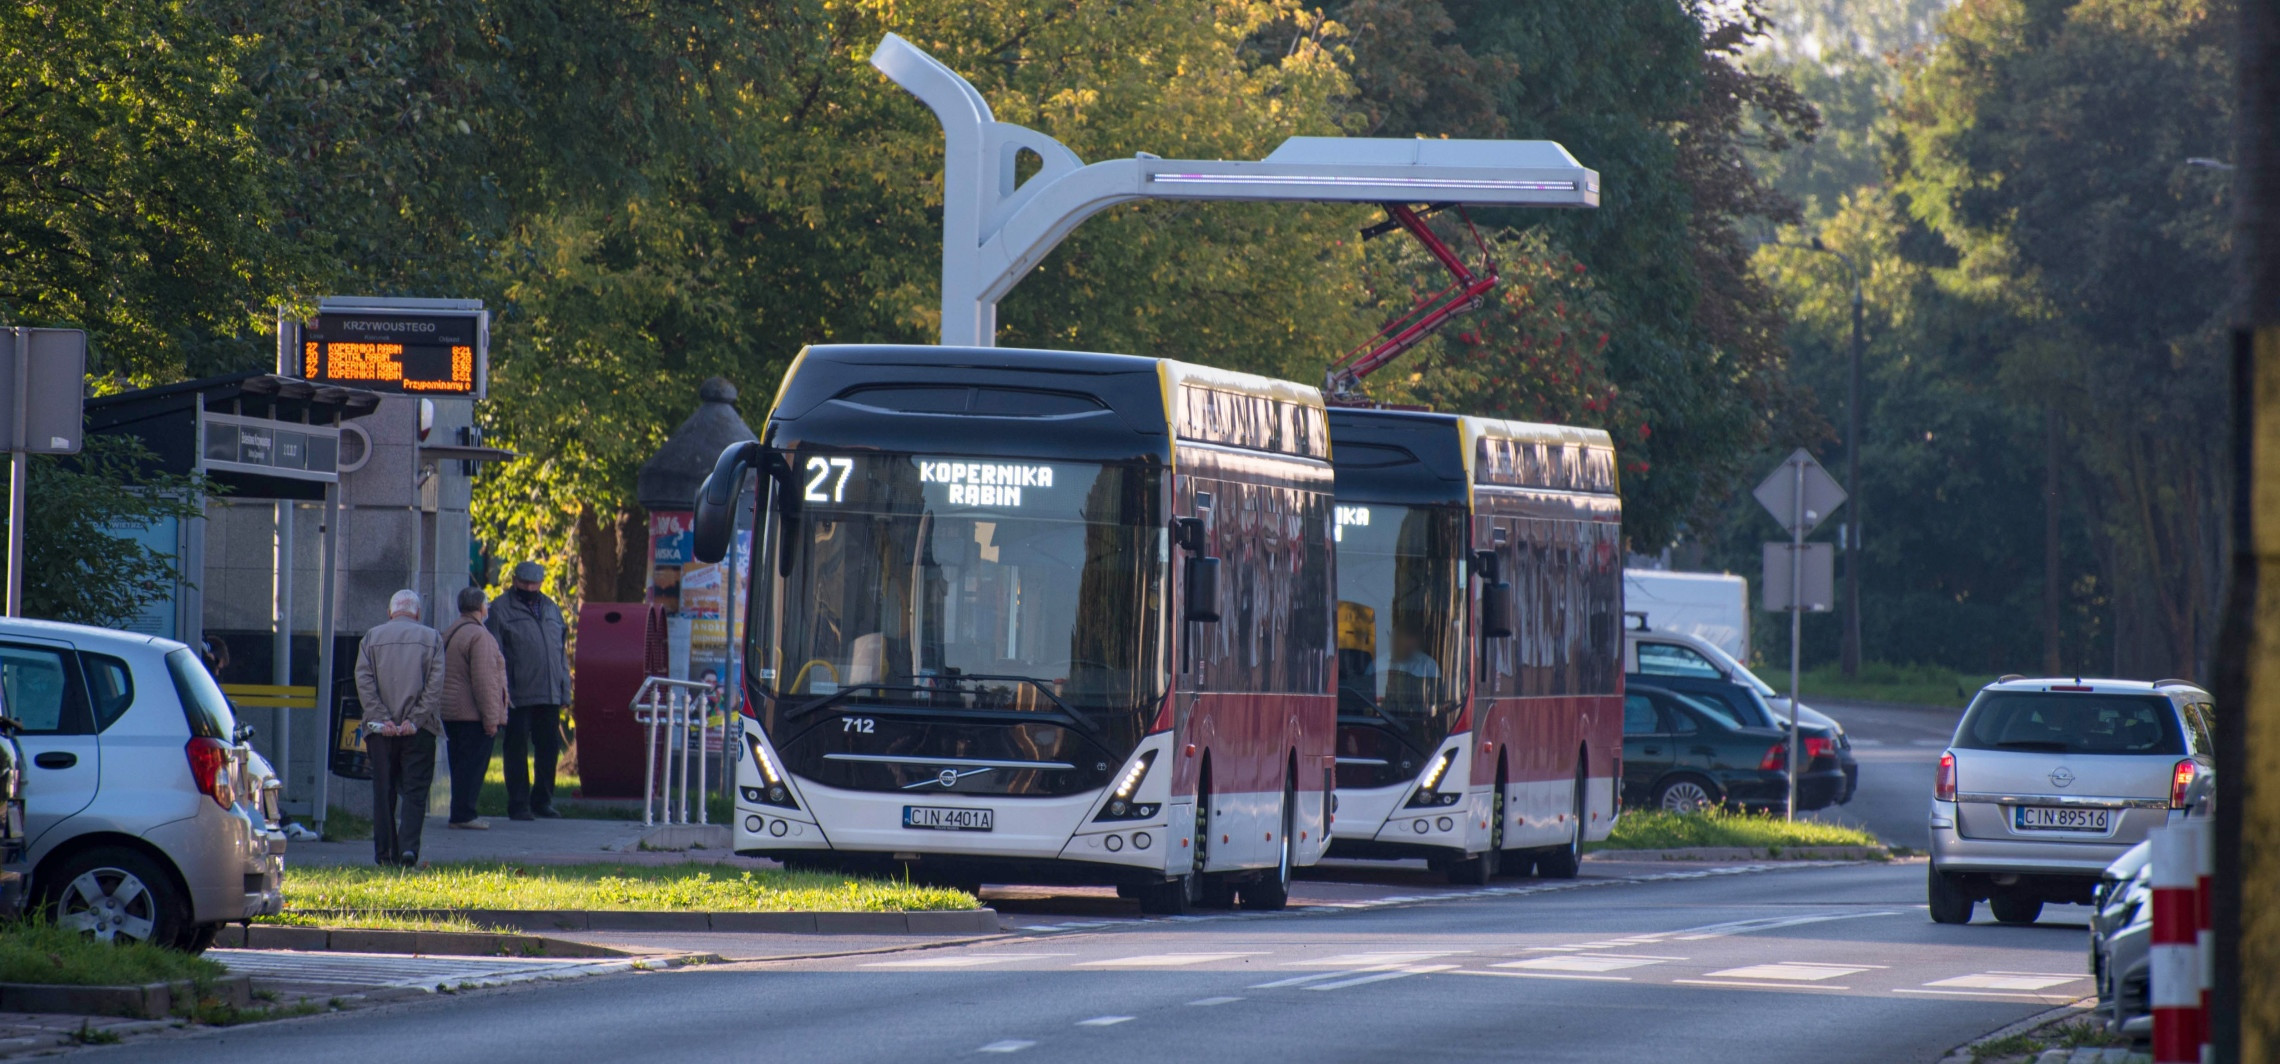 Inowrocław - Bezpłatne autobusy na lotnisko. Rozkład jazdy